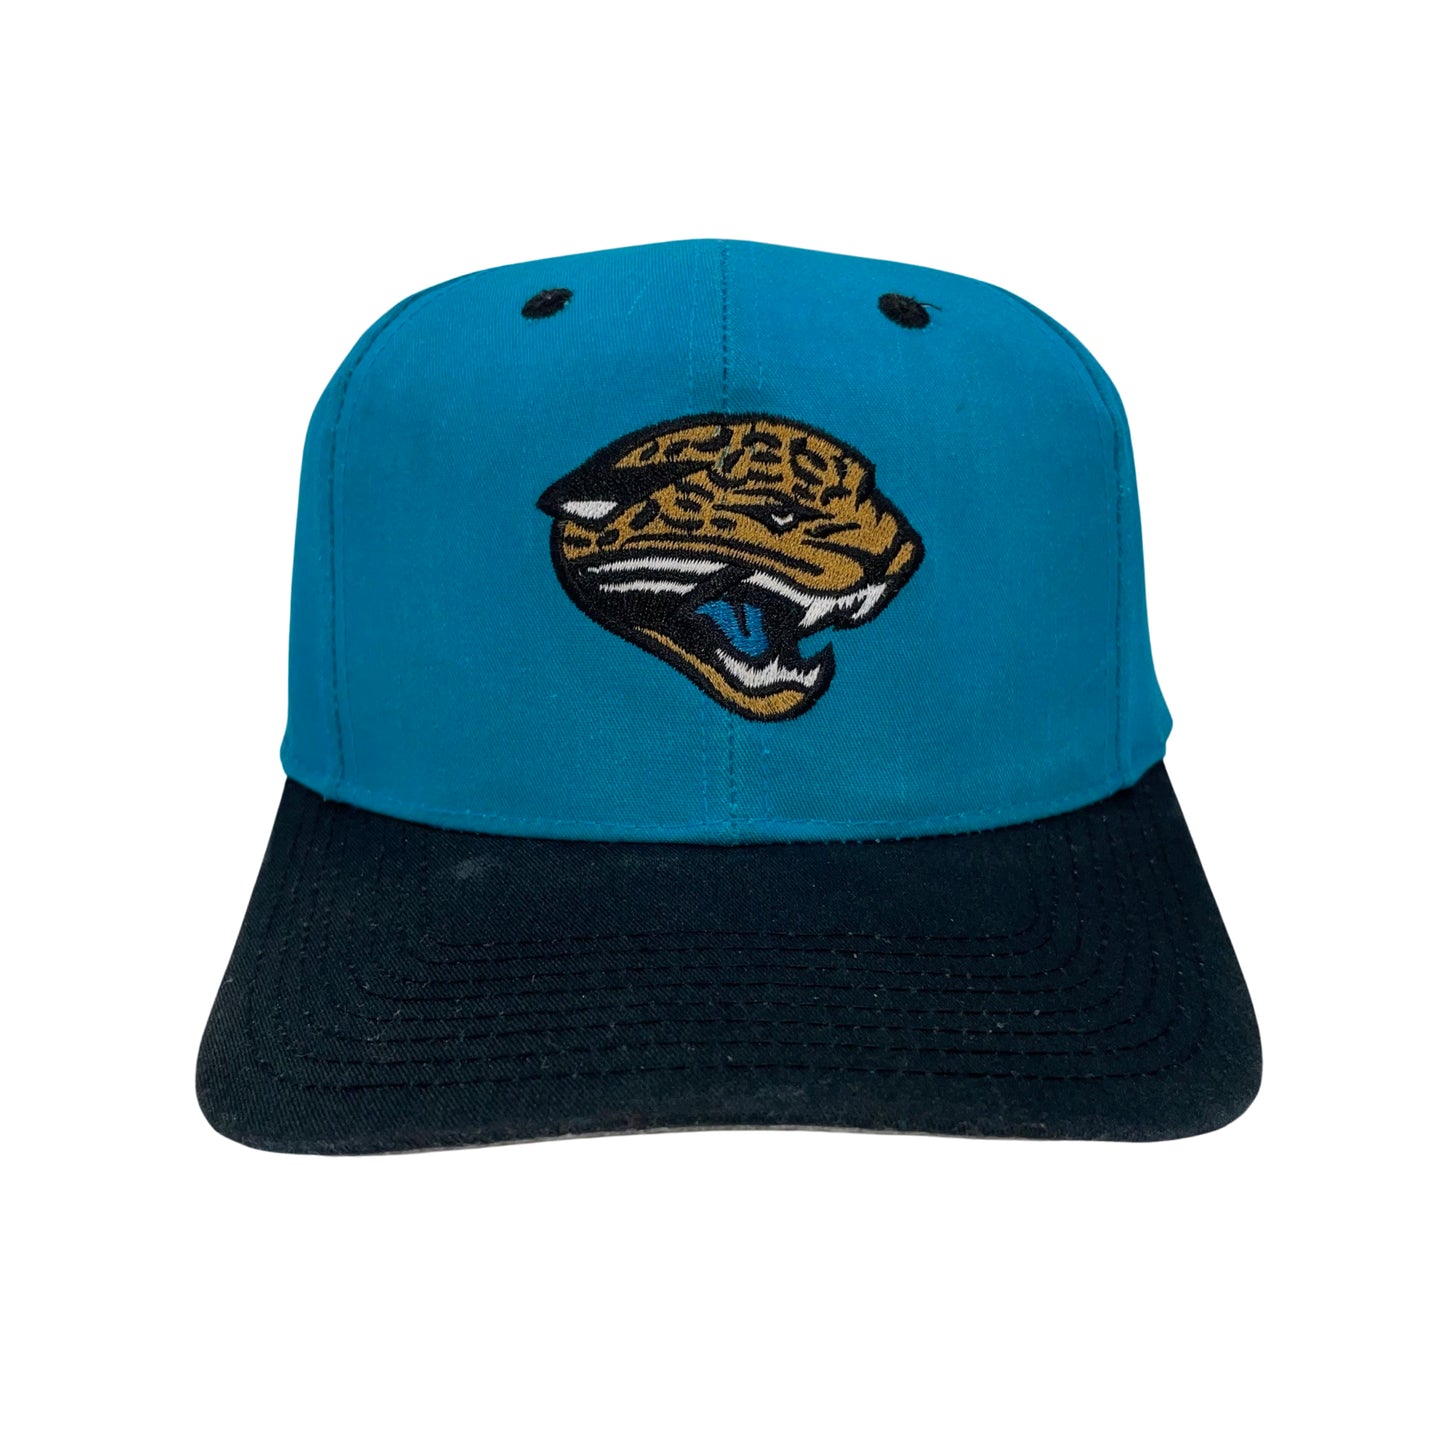 Vintage Jacksonville Jaguars LOGO 7 hat